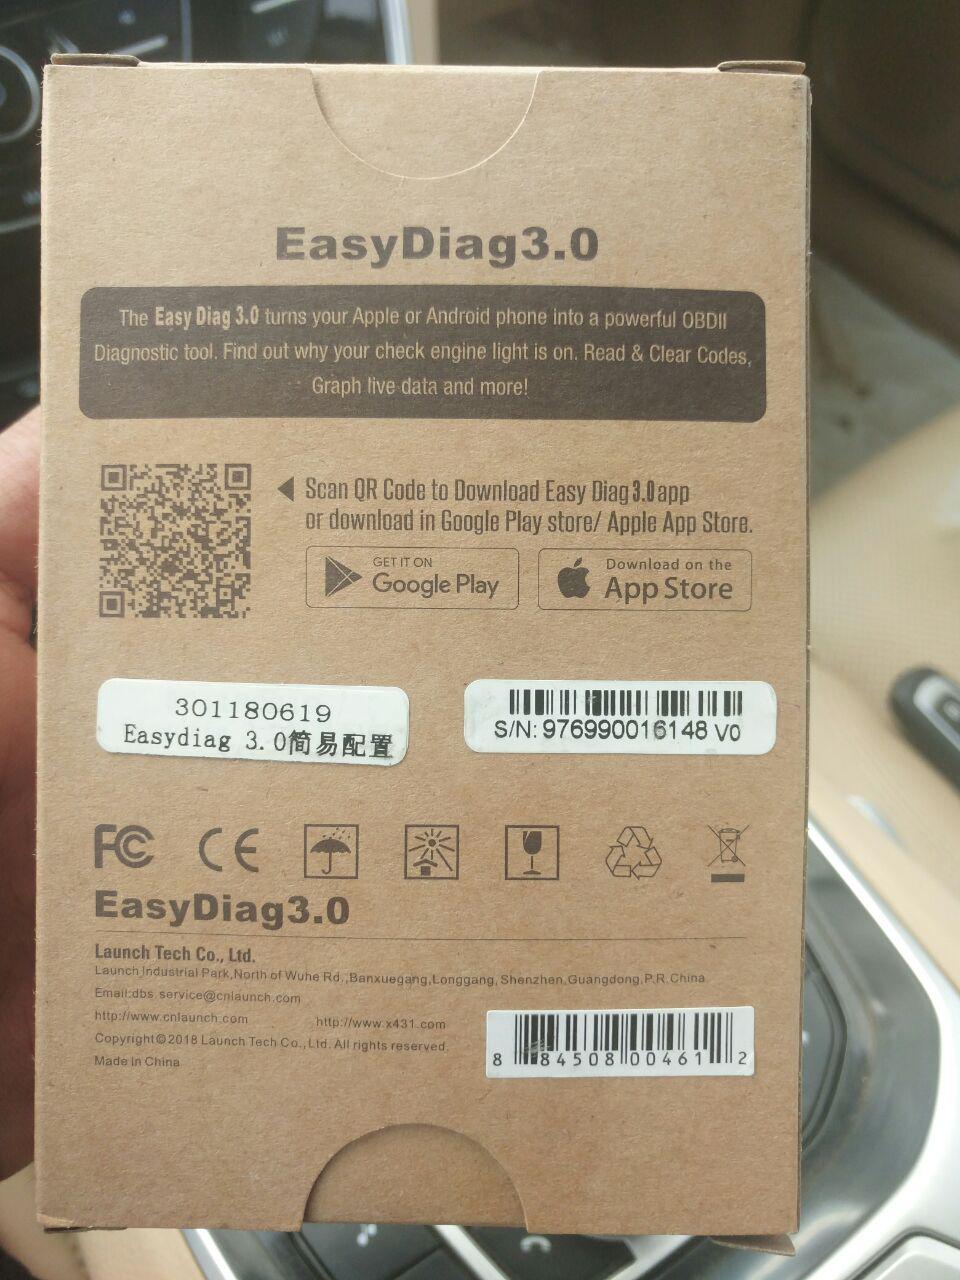 تجربة شراء EasyDiag 3.0 لفحص وتشخيص اعطال السيارات